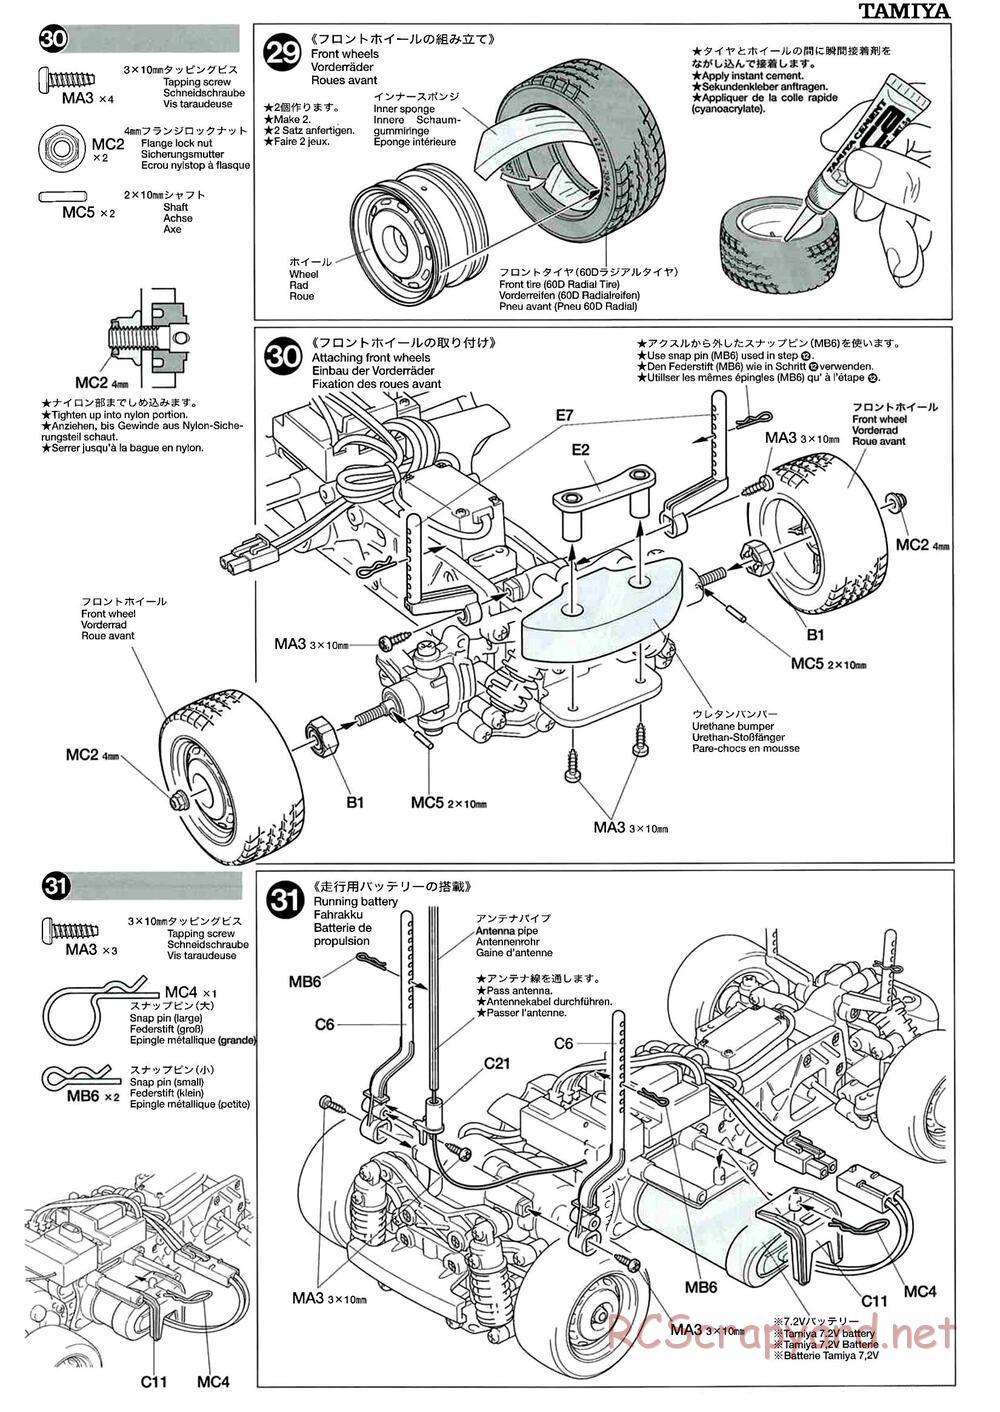 Tamiya - M-04L Chassis - Manual - Page 15